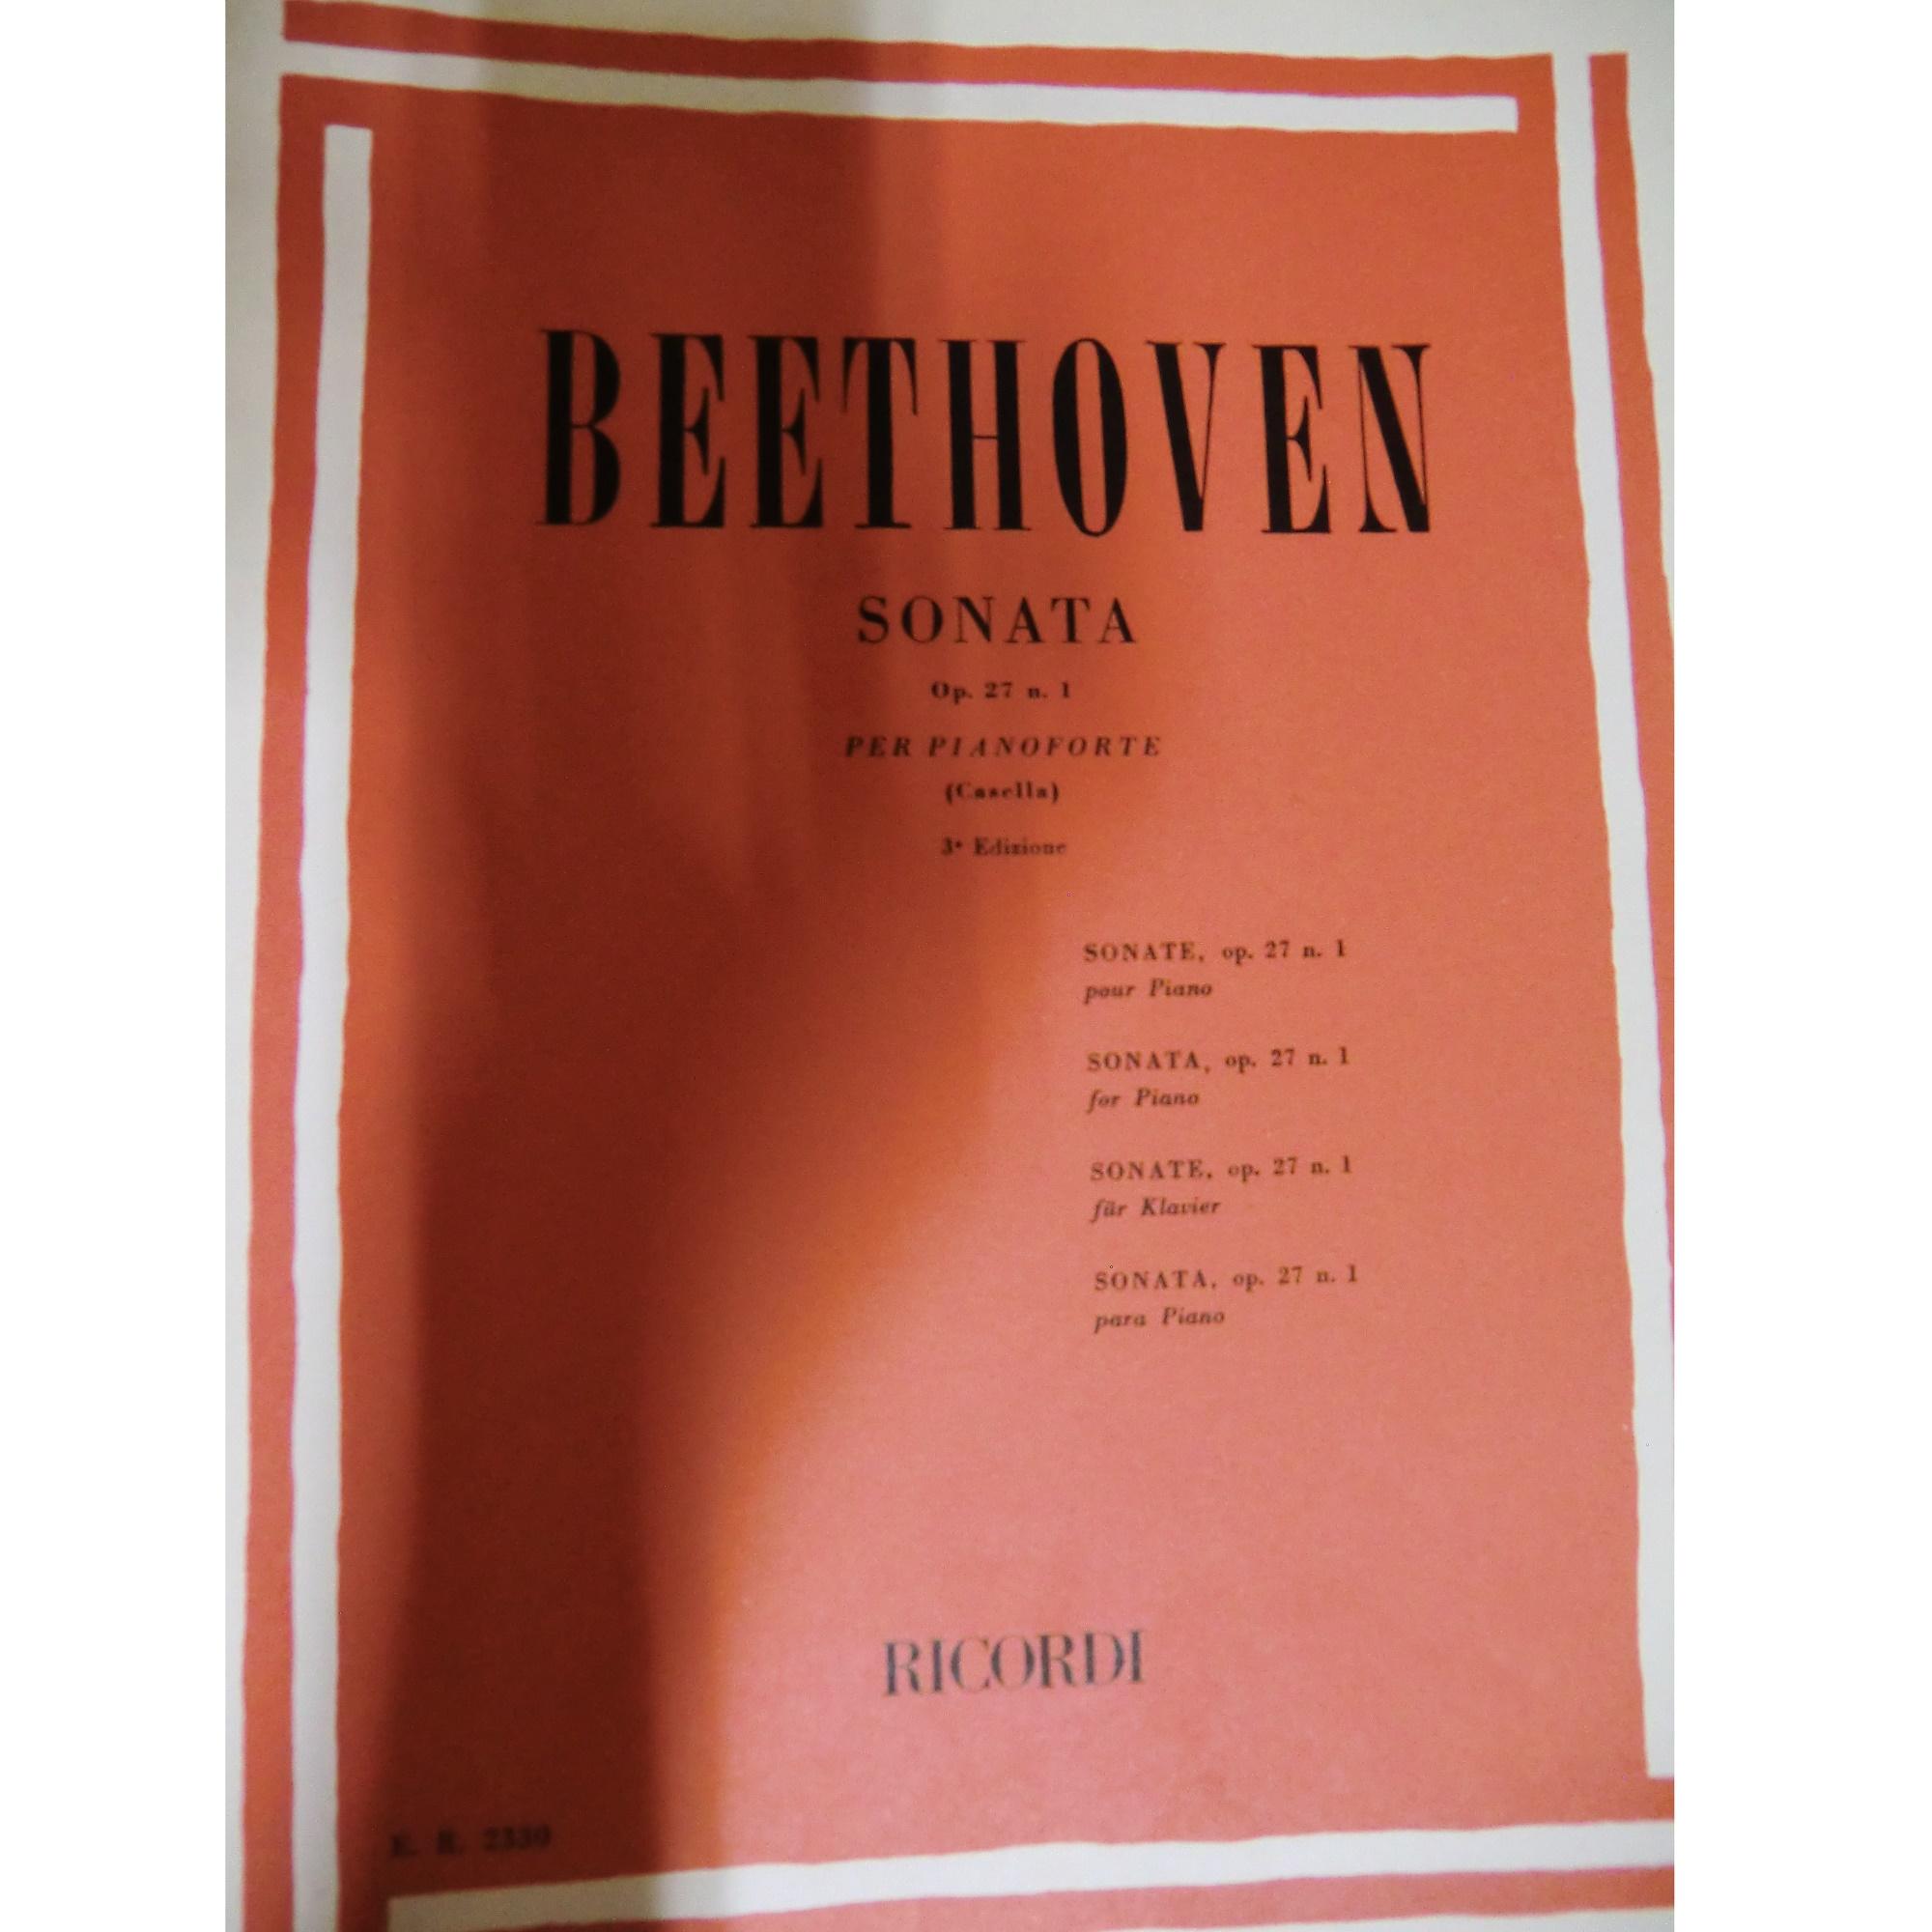 Beethoven Sonata Op. 27 n. 1 per pianoforte (casella) 3^ edizione - Ricordi